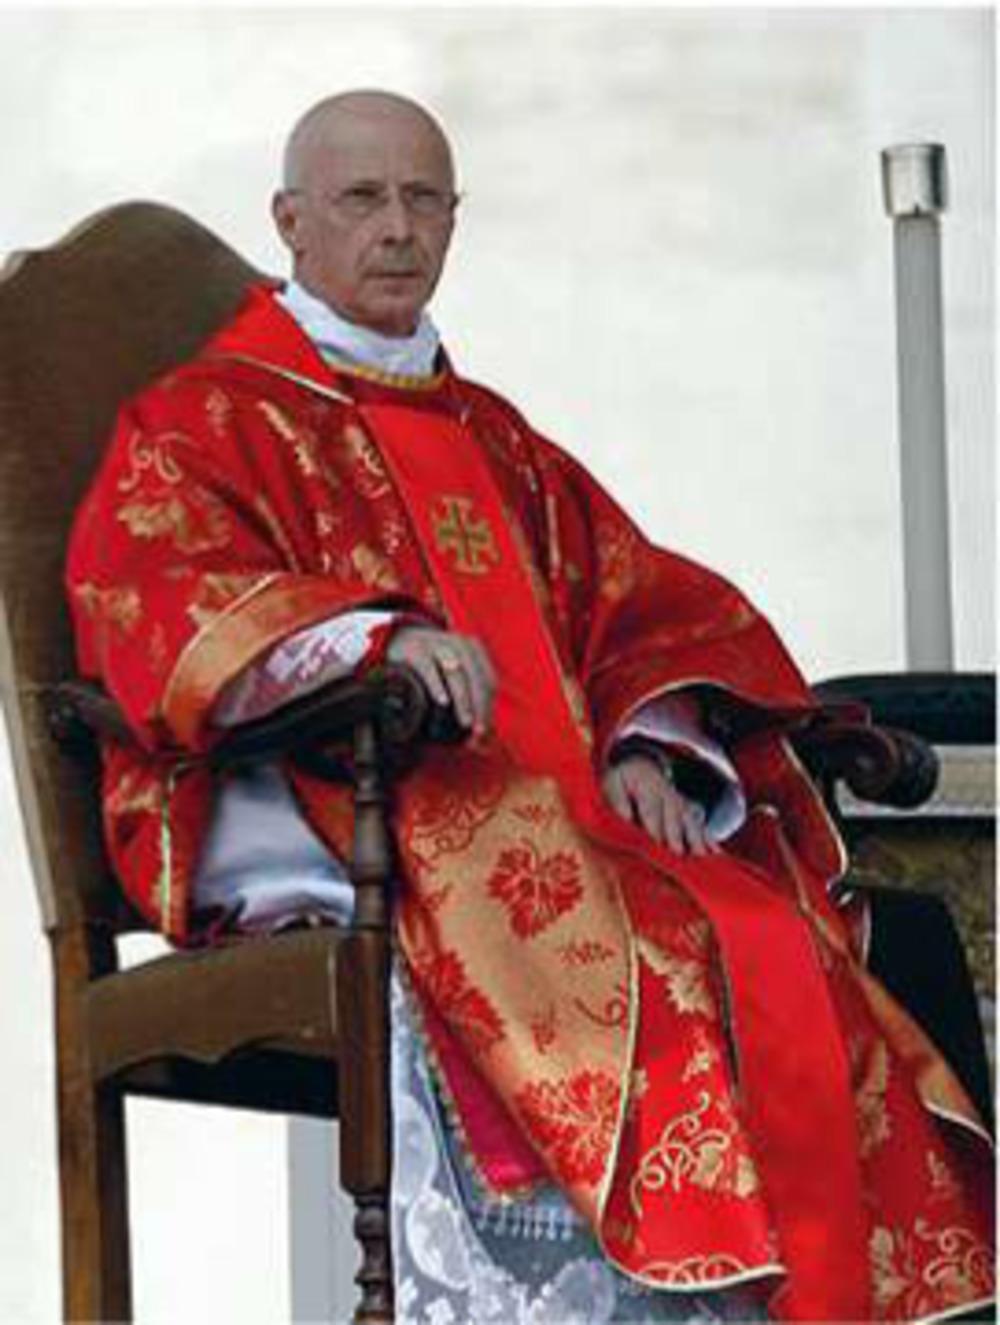 Kardinaal Sodano noemde de beschuldigingen van seksueel misbruik door priesters 'roddels'.